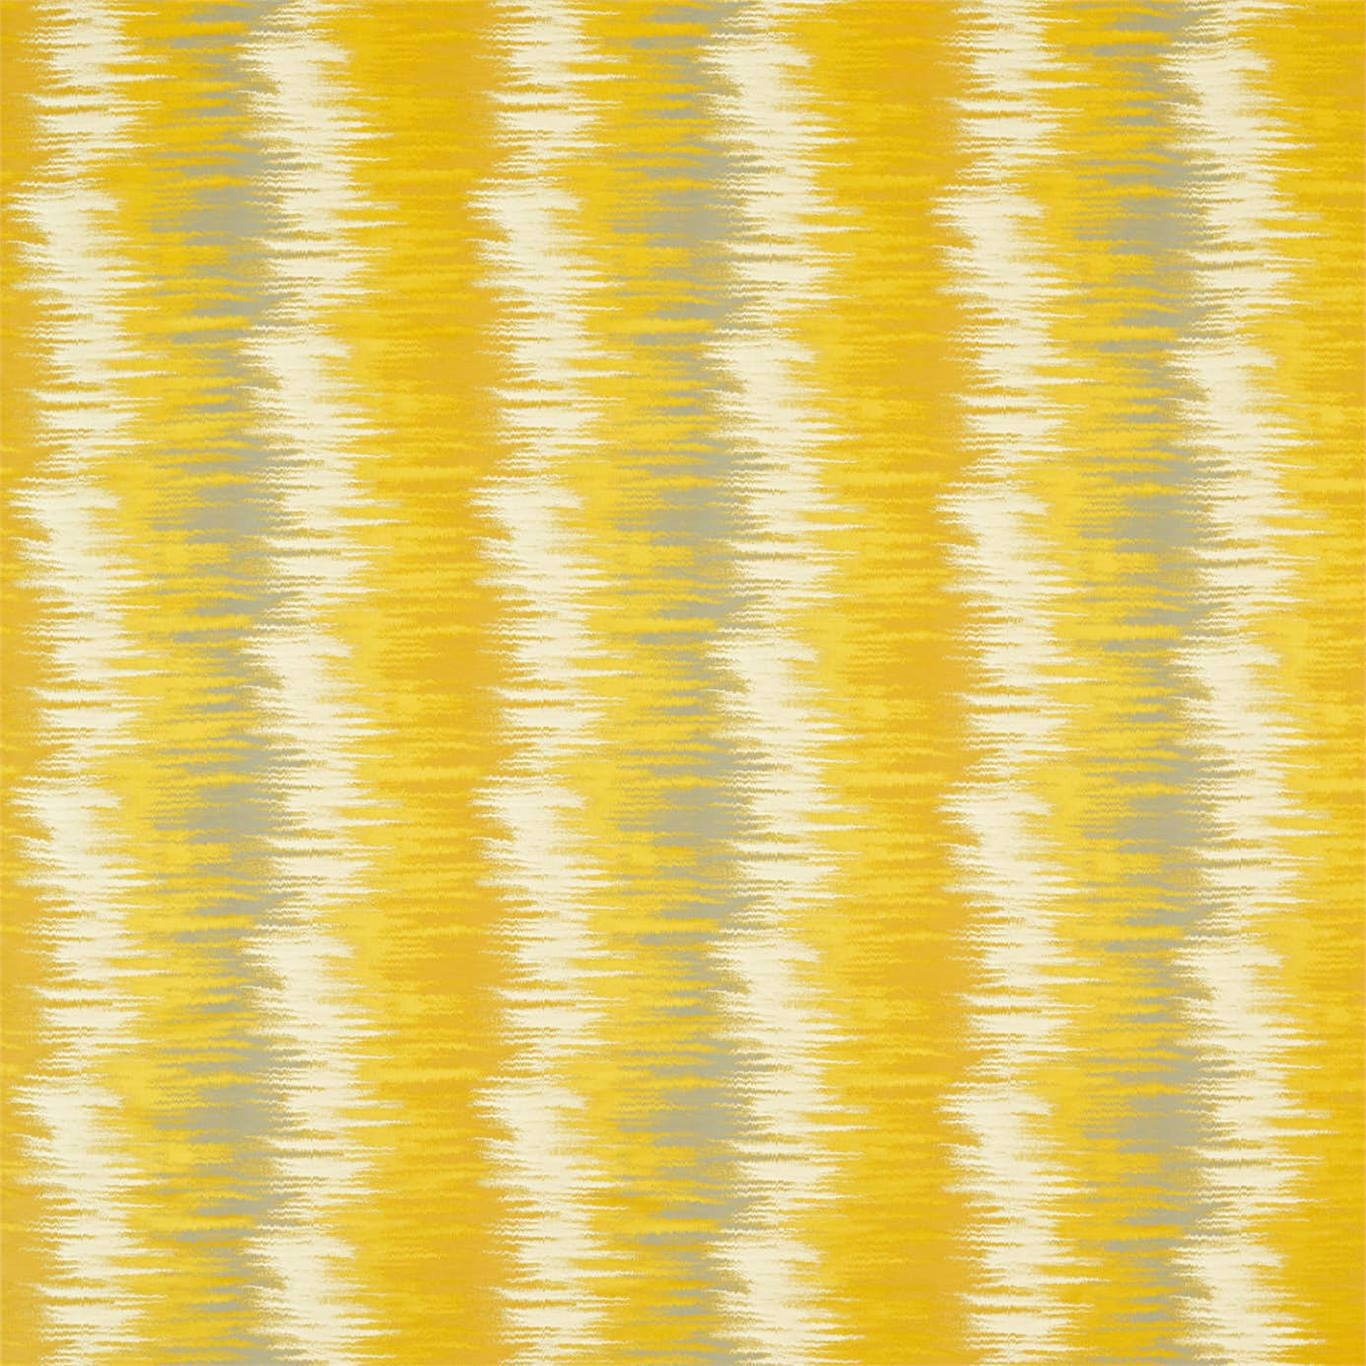 Libeccio Gold Fabric by HAR